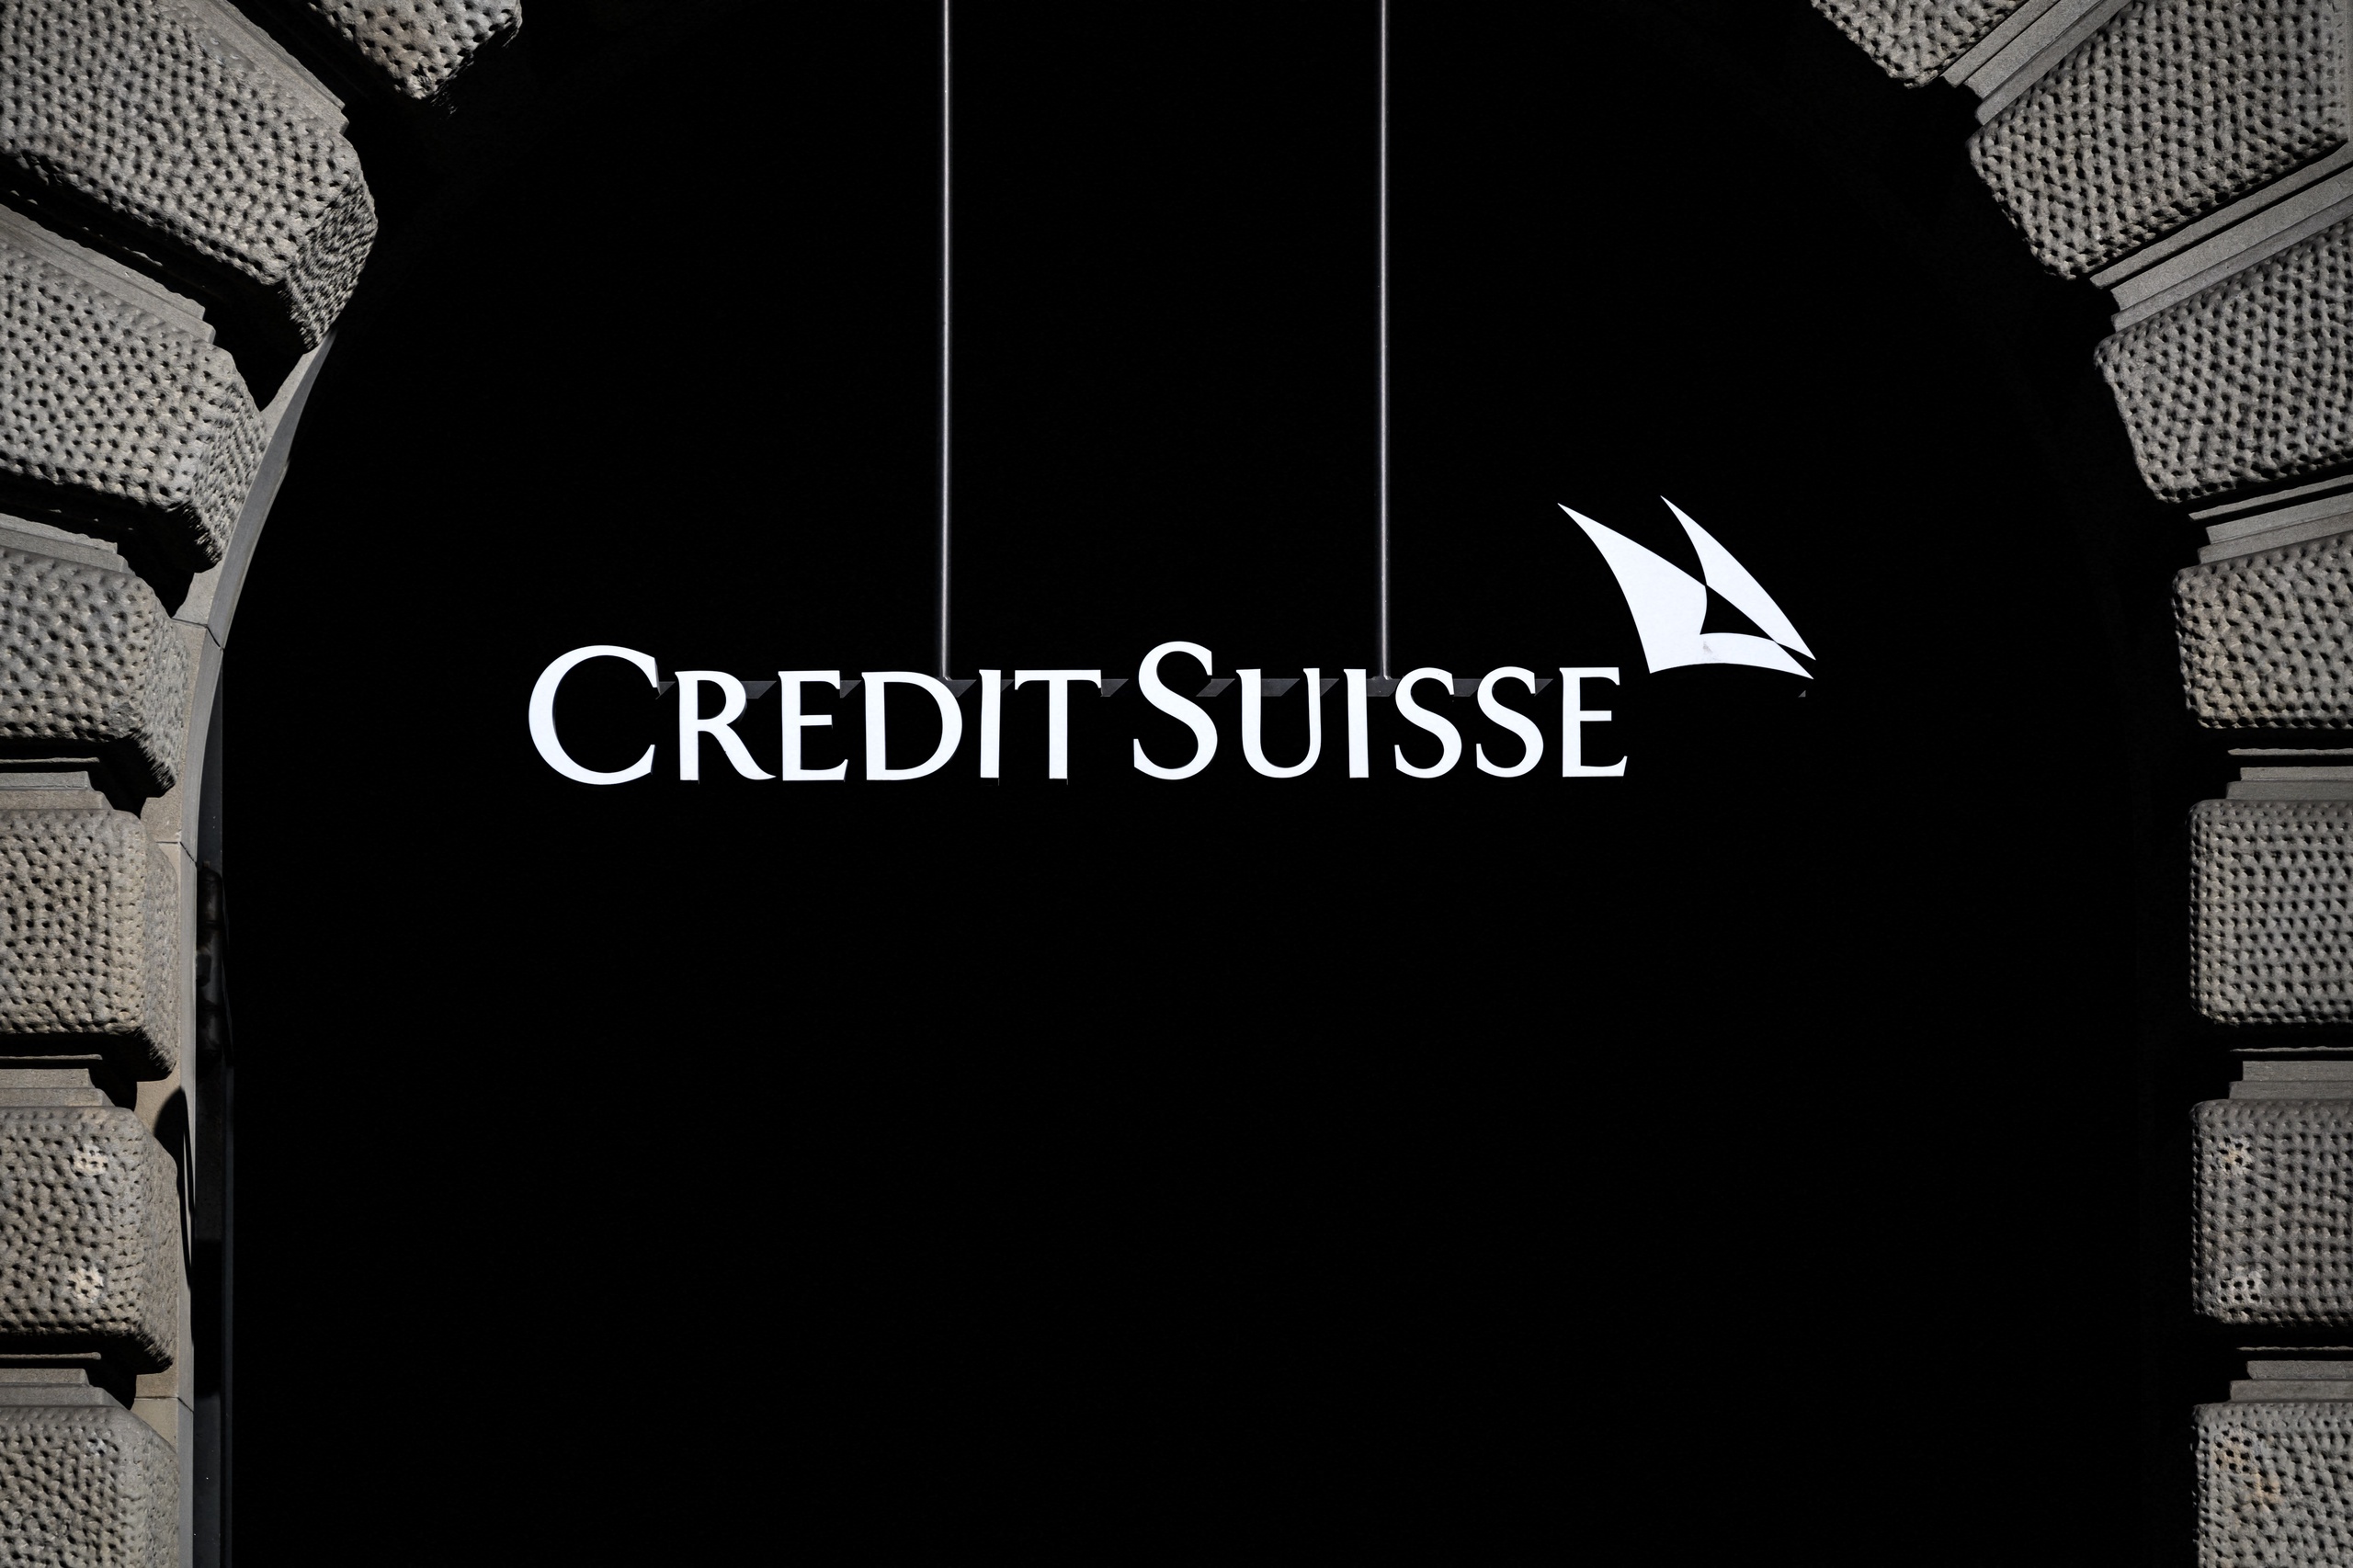 Staat Credit Suisse op omvallen?